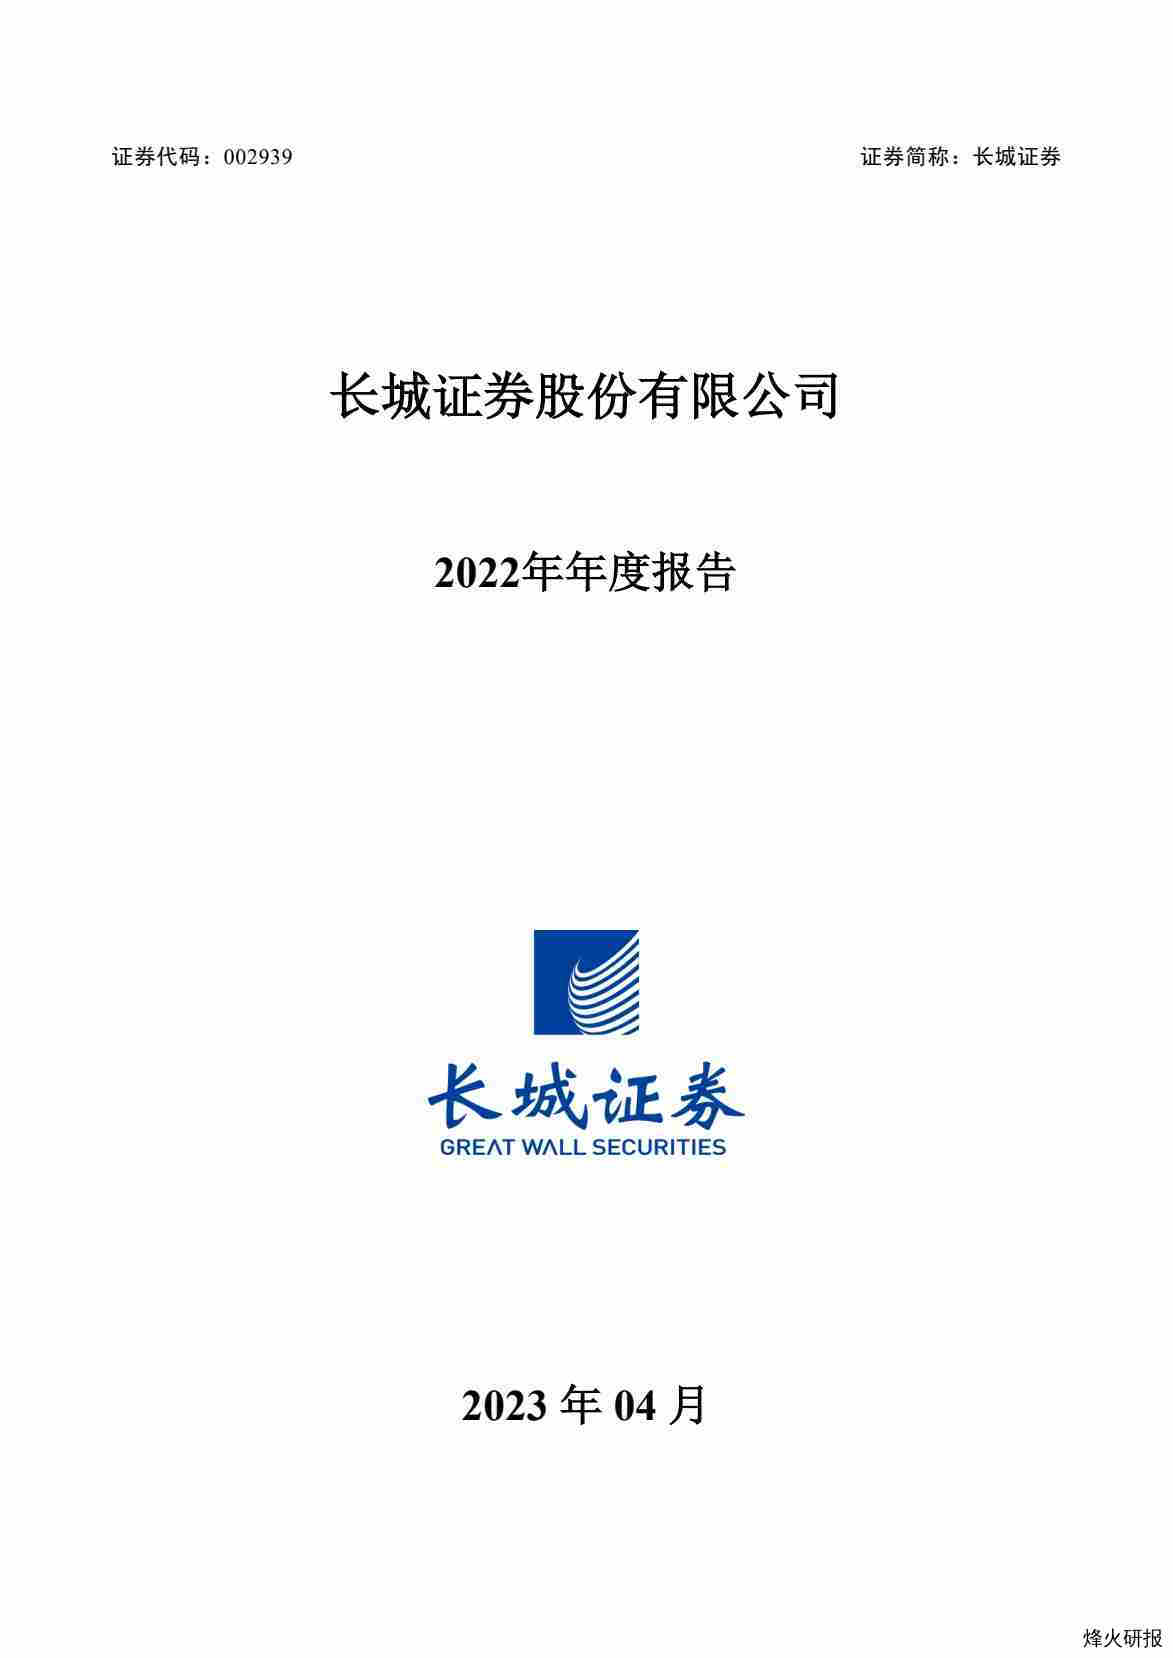 【财报】长城证券：2022年年度报告.pdf-第一页